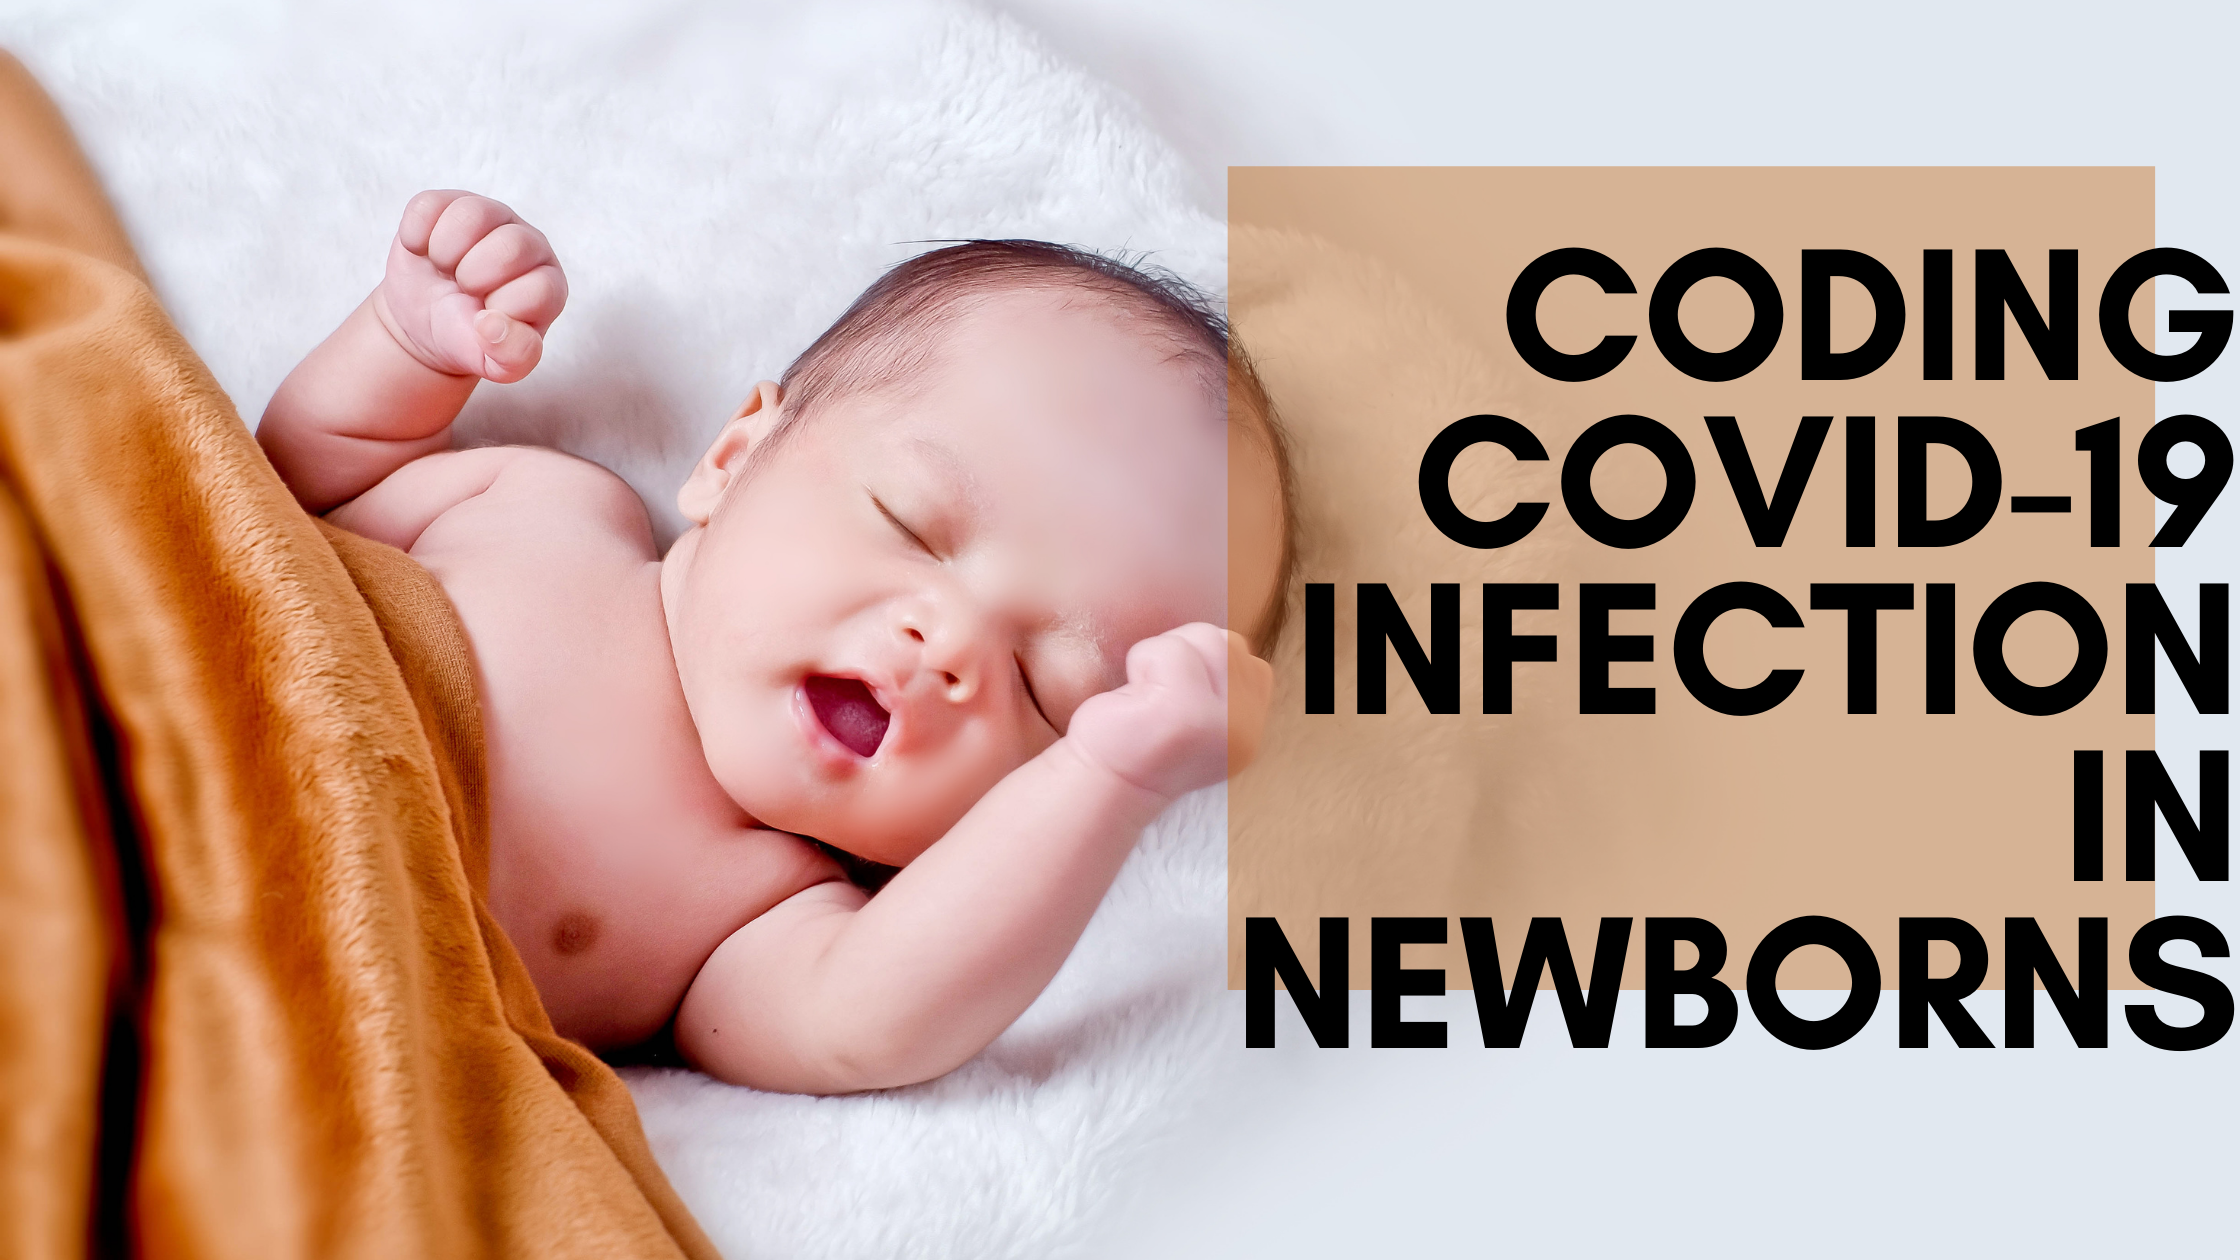 Coding COVID-19 Infection in Newborns